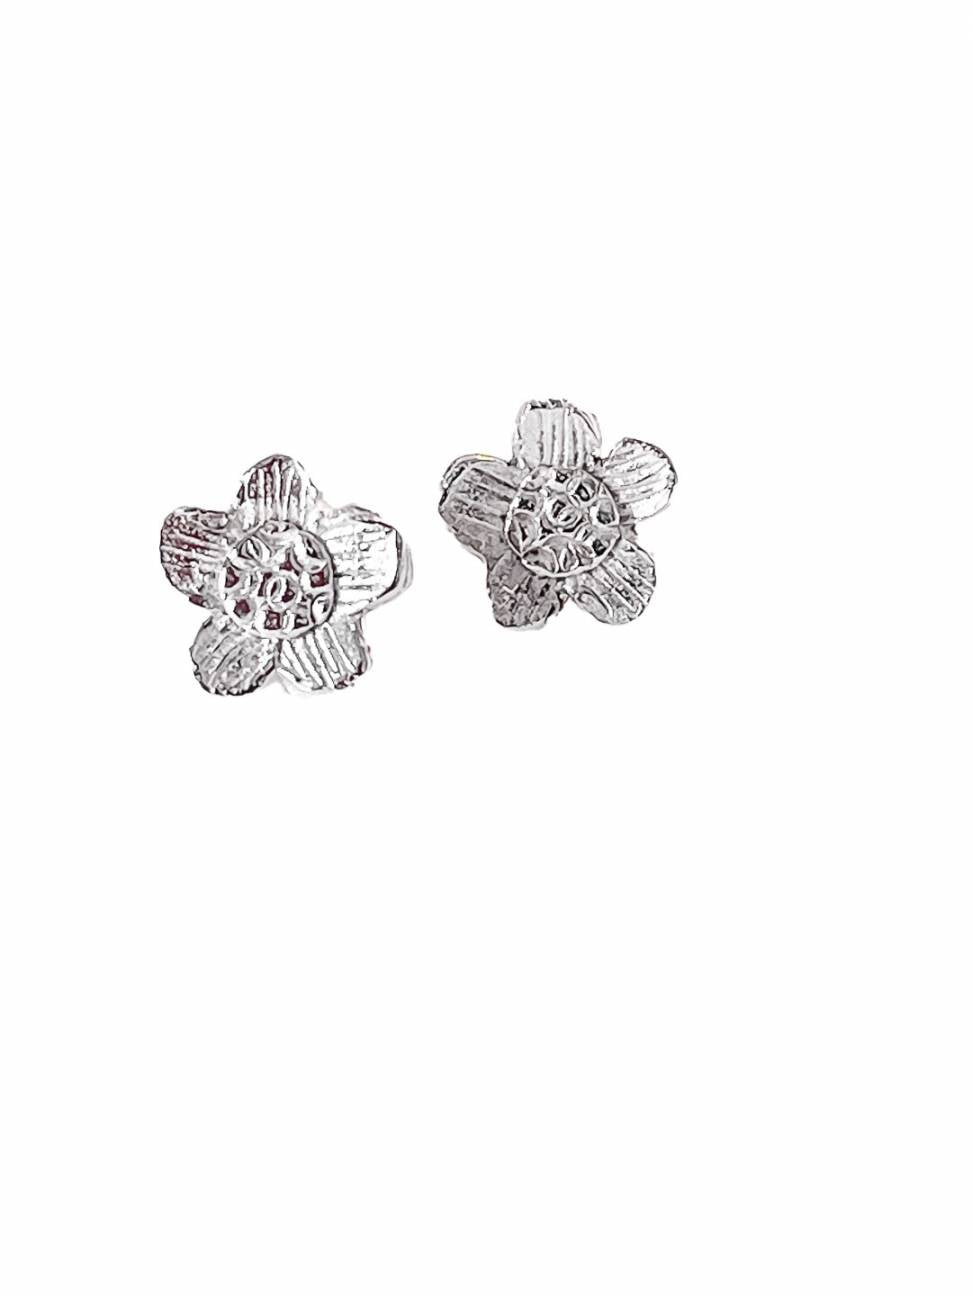 Daisy Flower Sterling Silver Stud Earrings